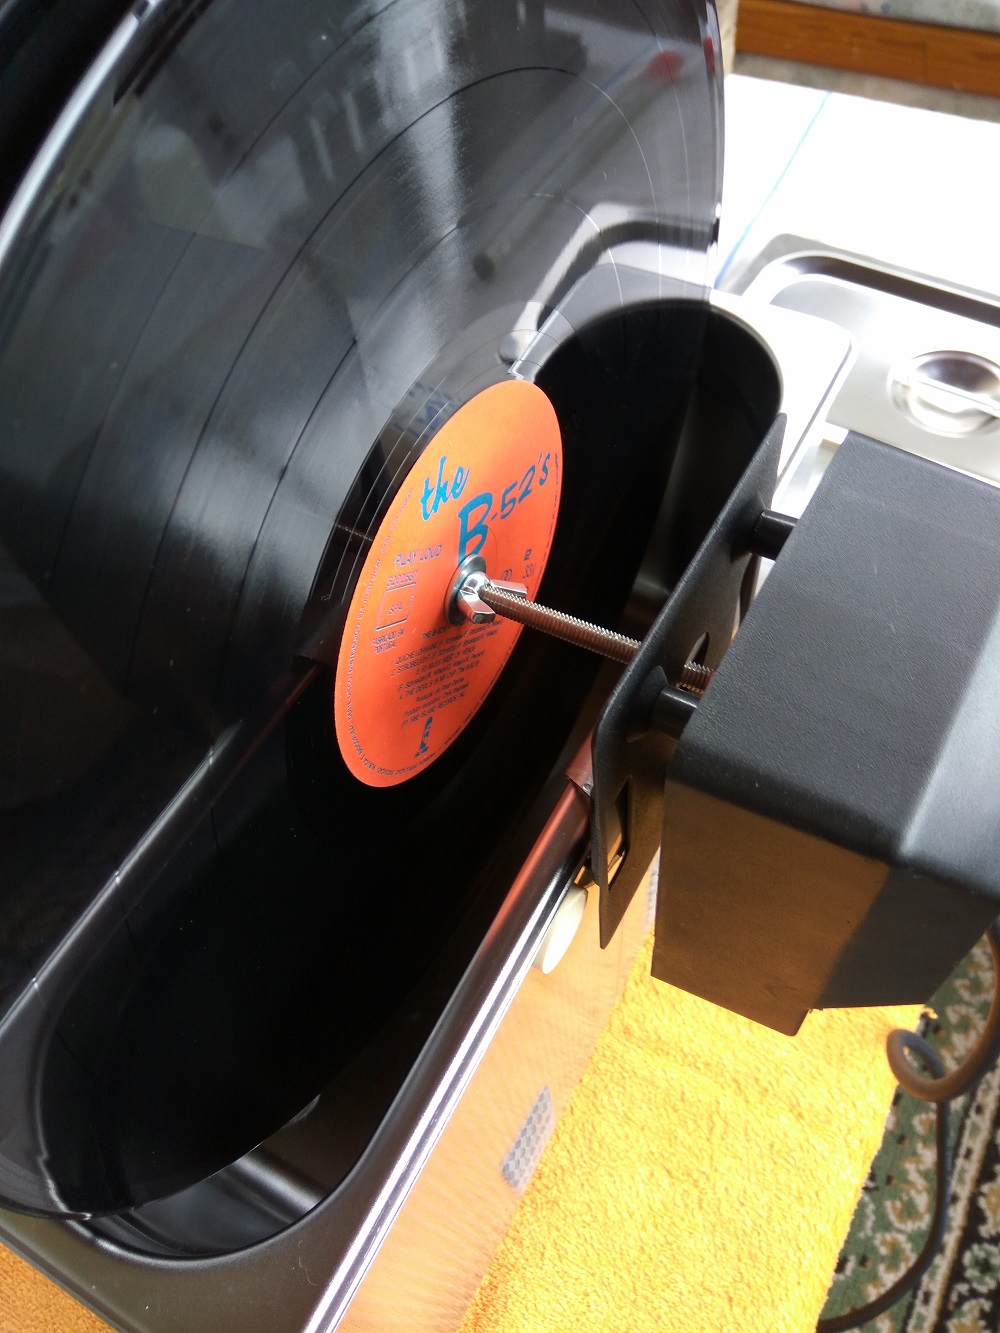 Maquina de lavar discos de vinil (LP) - Página 2 Img_2019